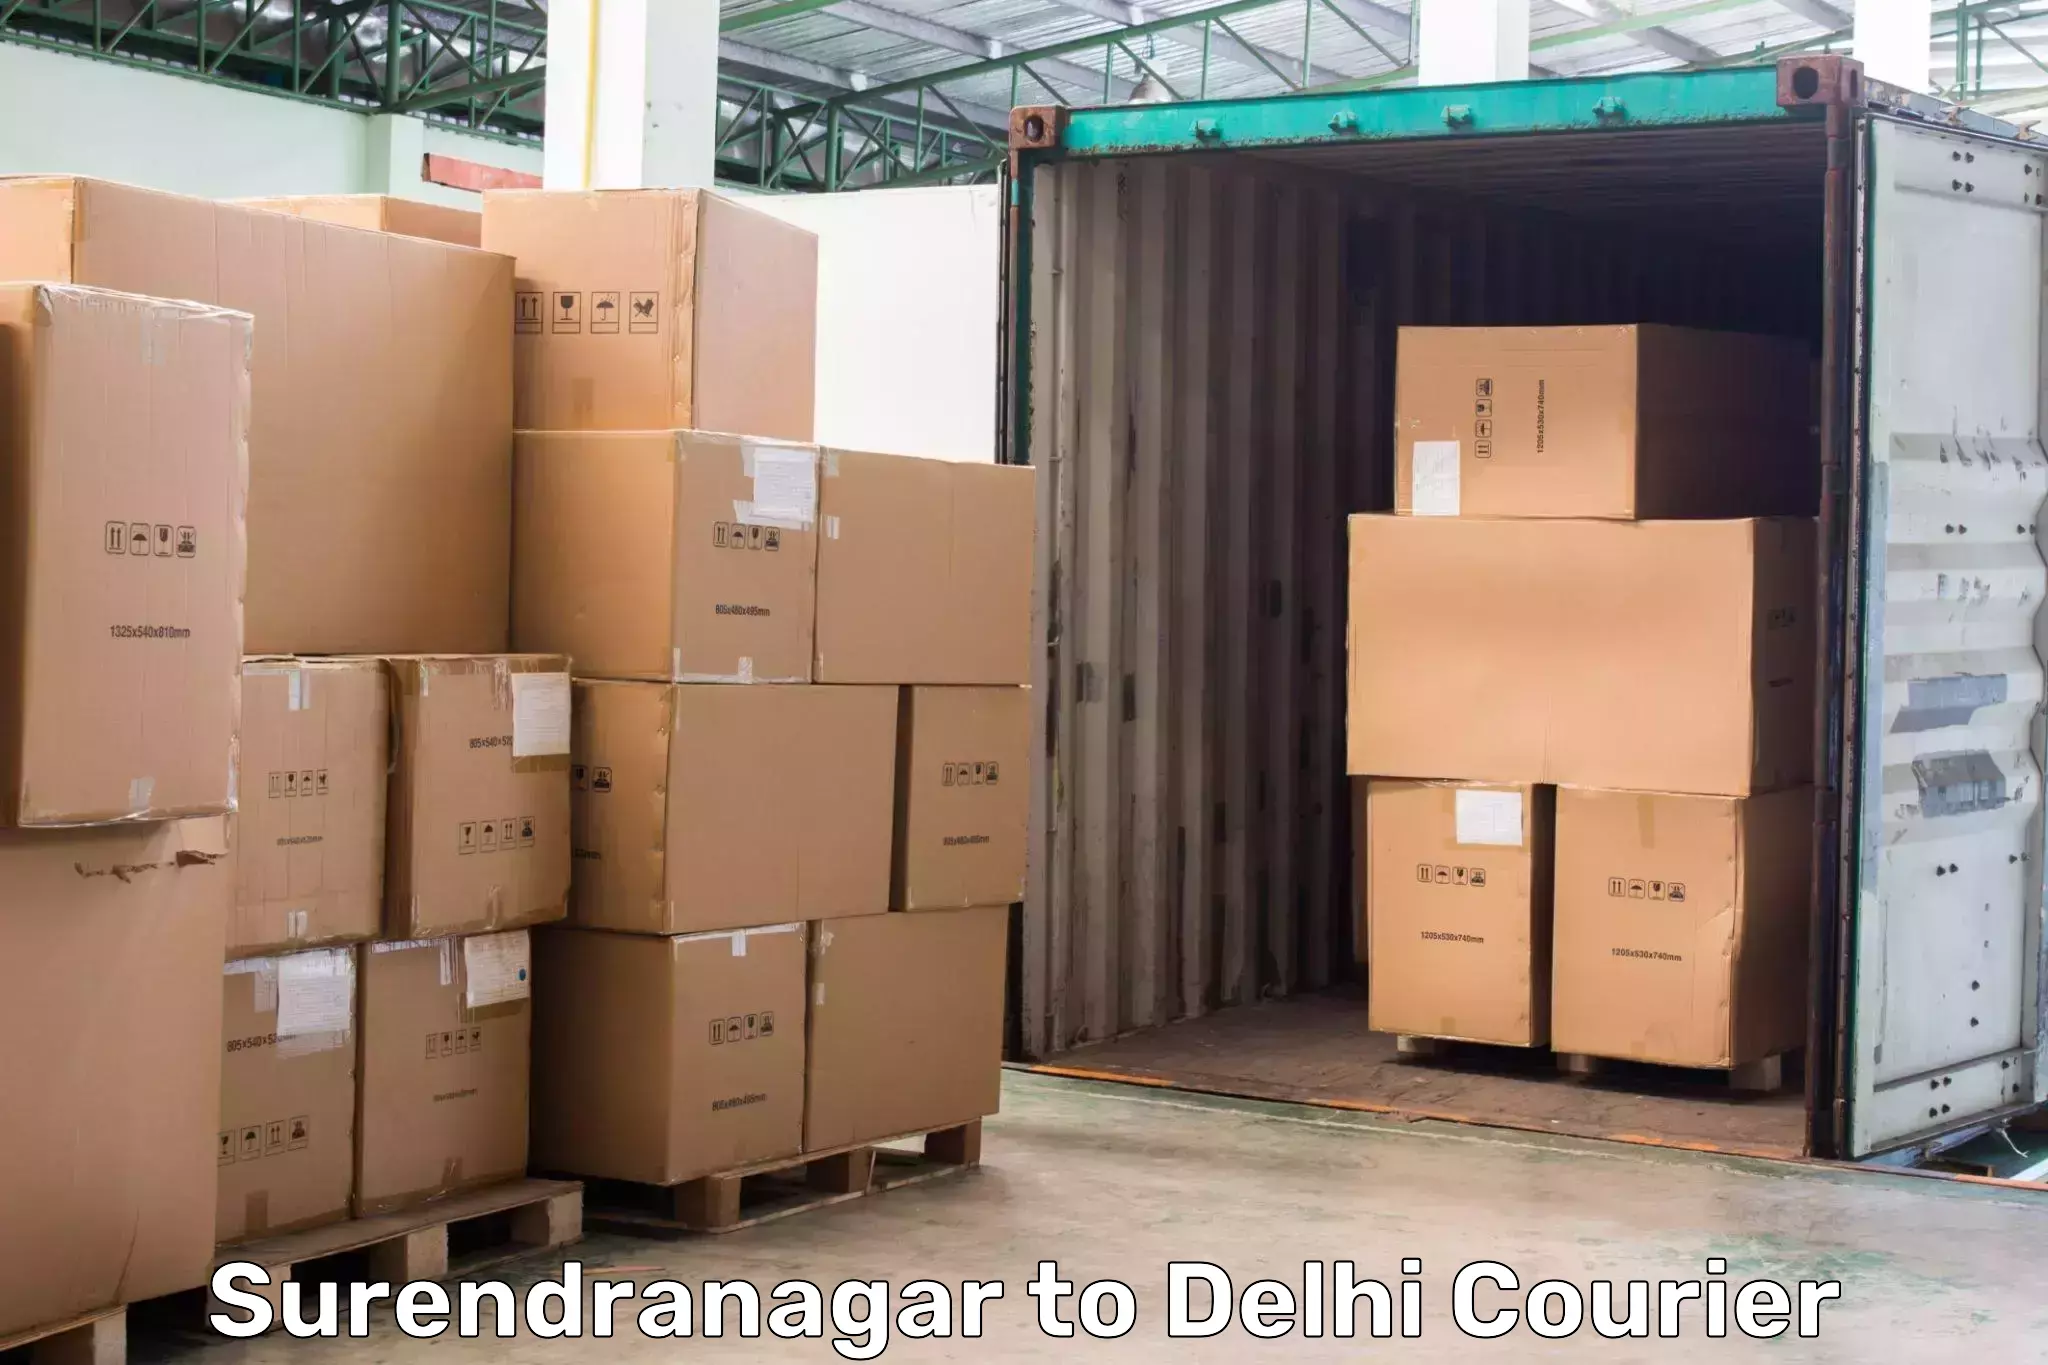 Cargo delivery service Surendranagar to Delhi